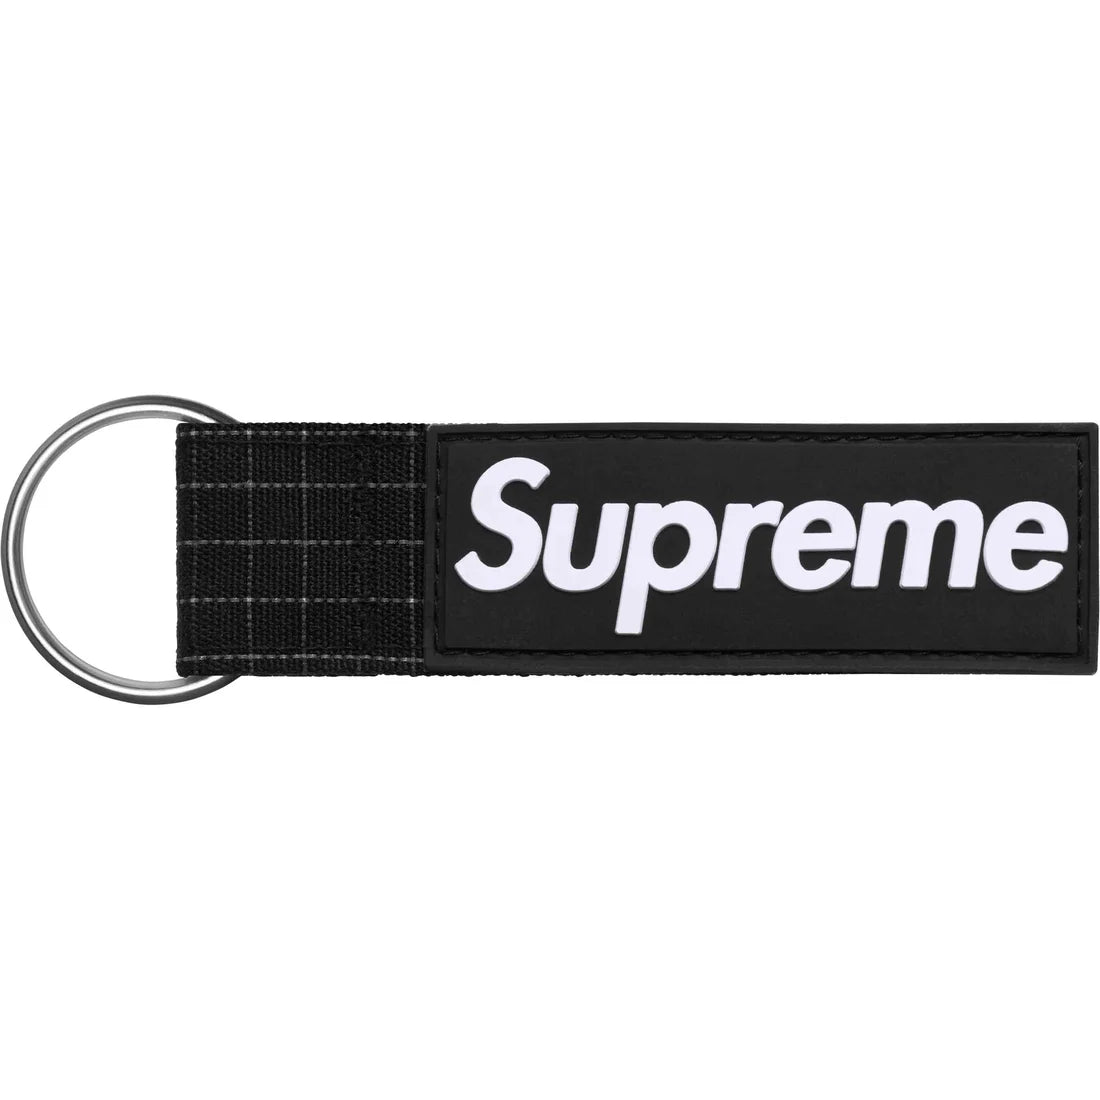 Supreme Ripstop Keychain Black